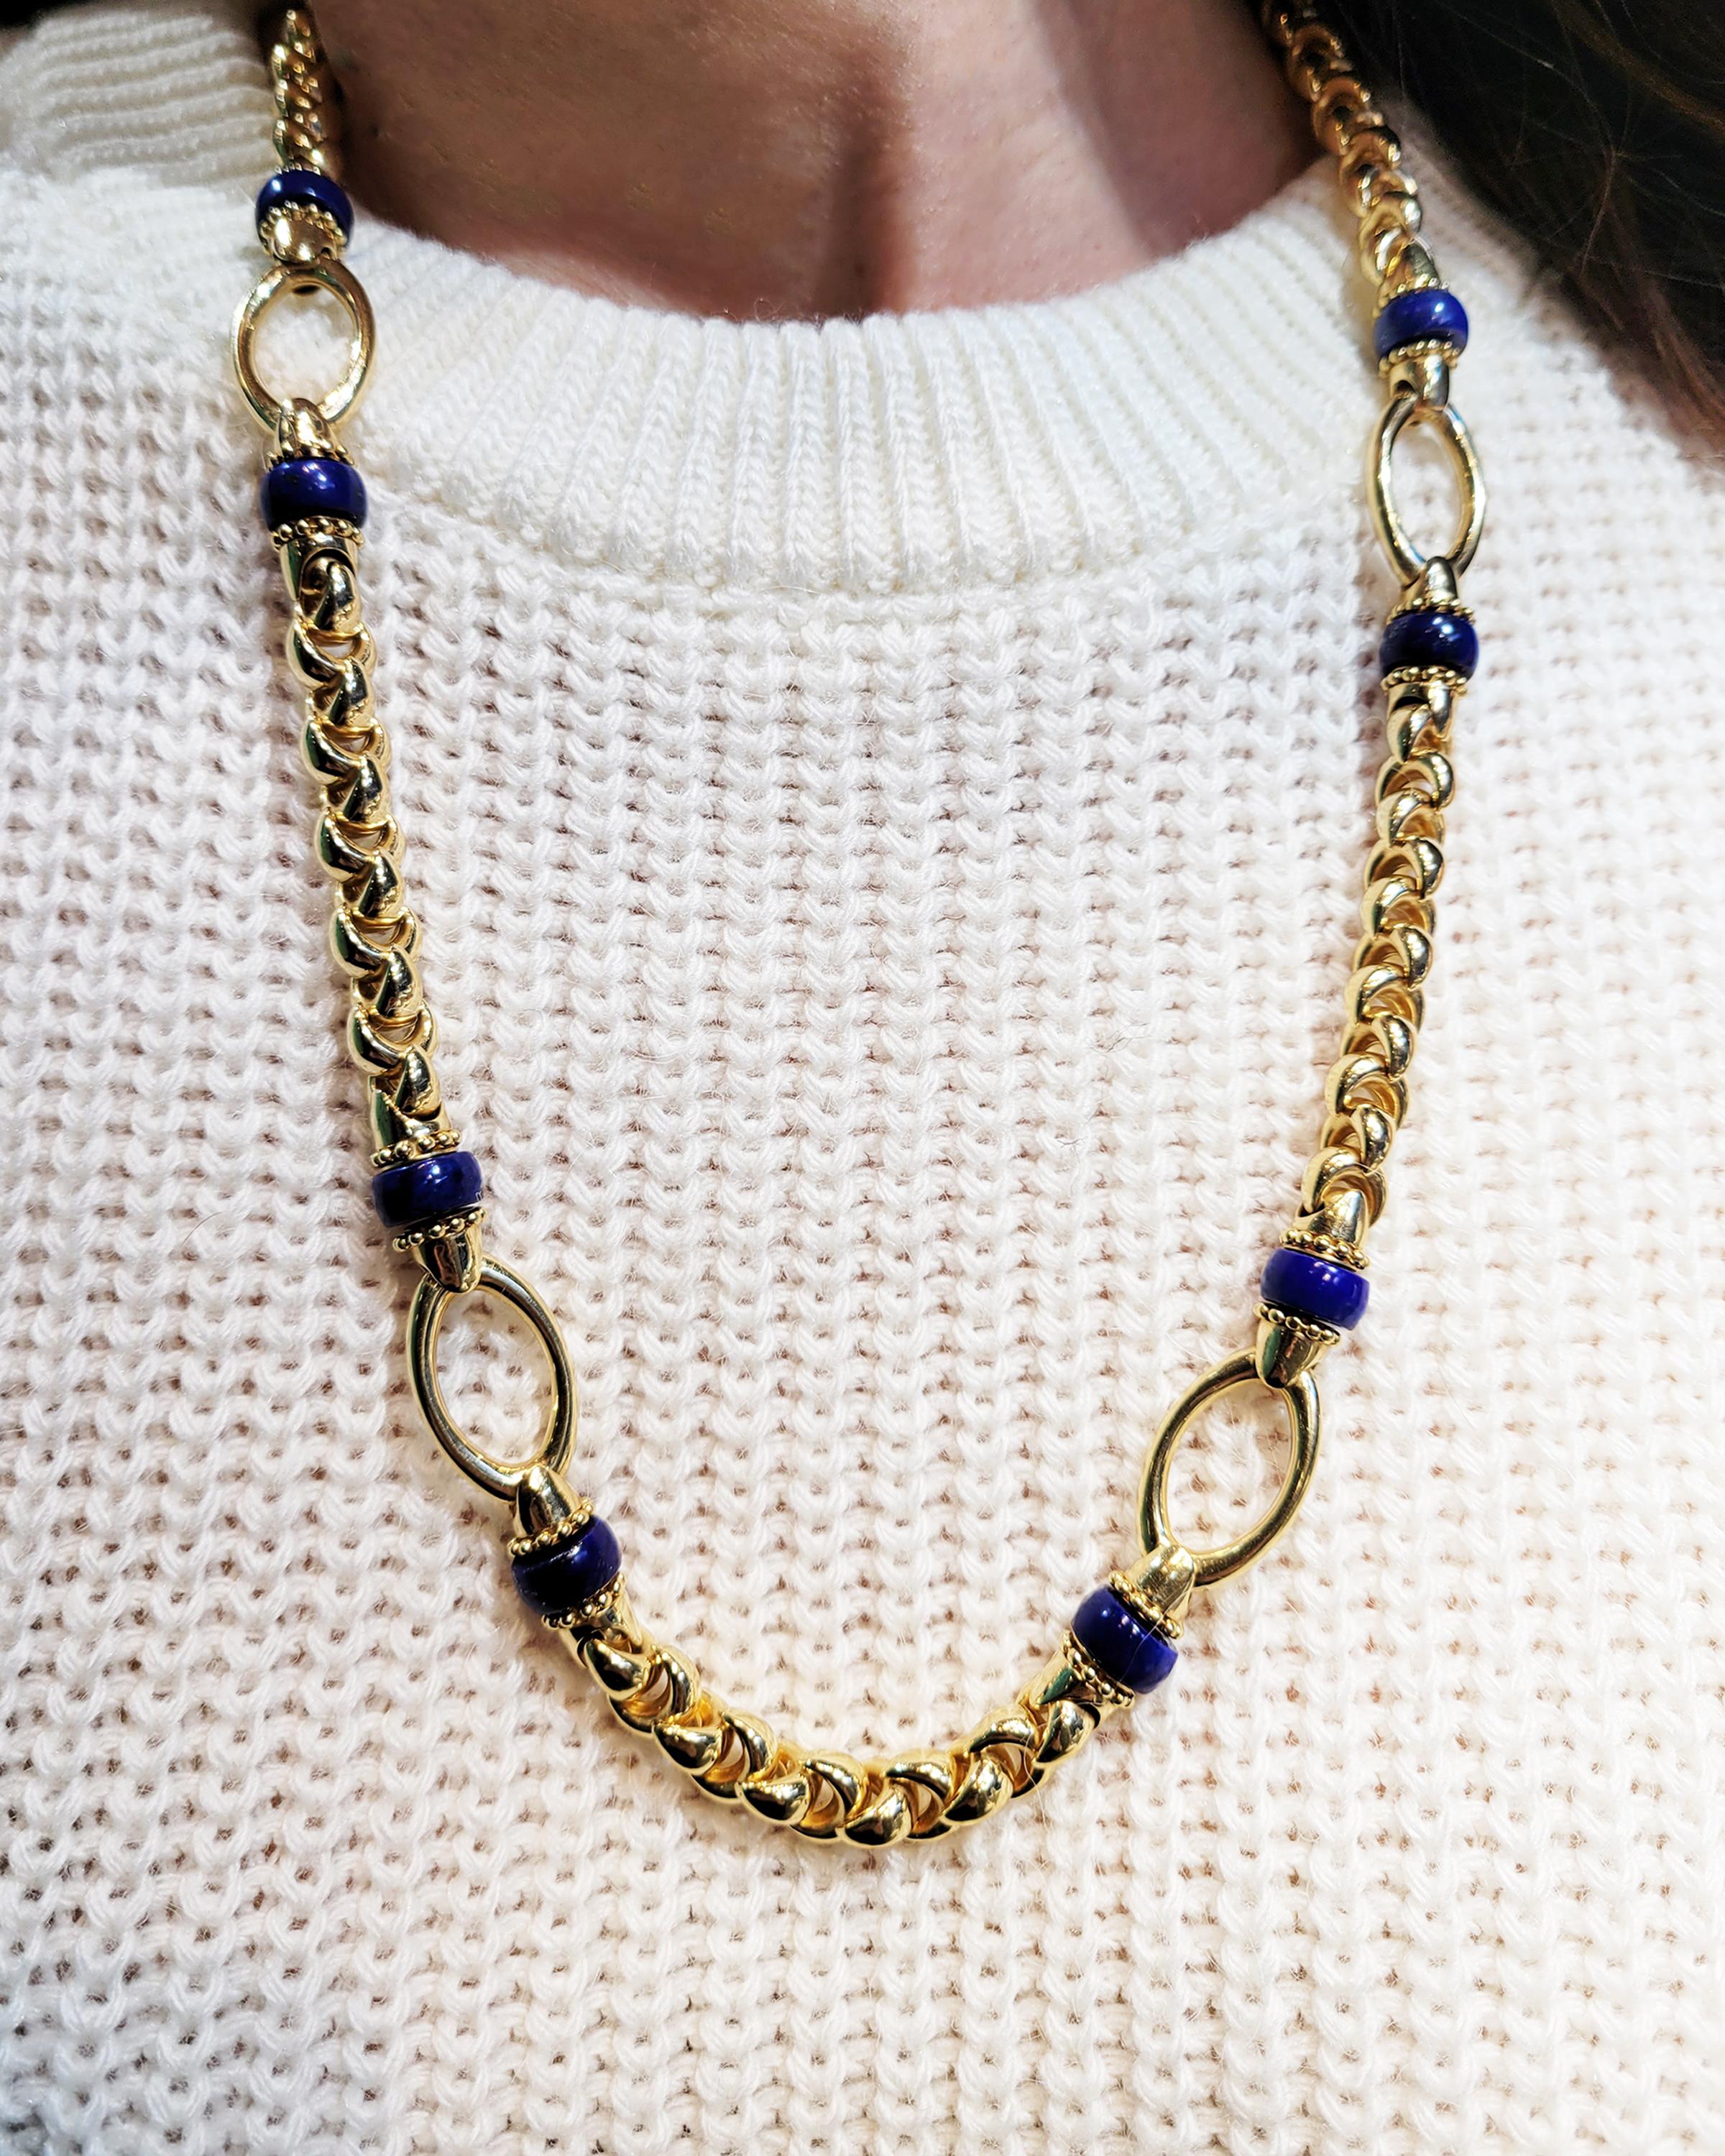 Women's Lapis Lazuli Necklace Earrings Bracelet Jewelry Set in 18k Yellow Gold For Sale